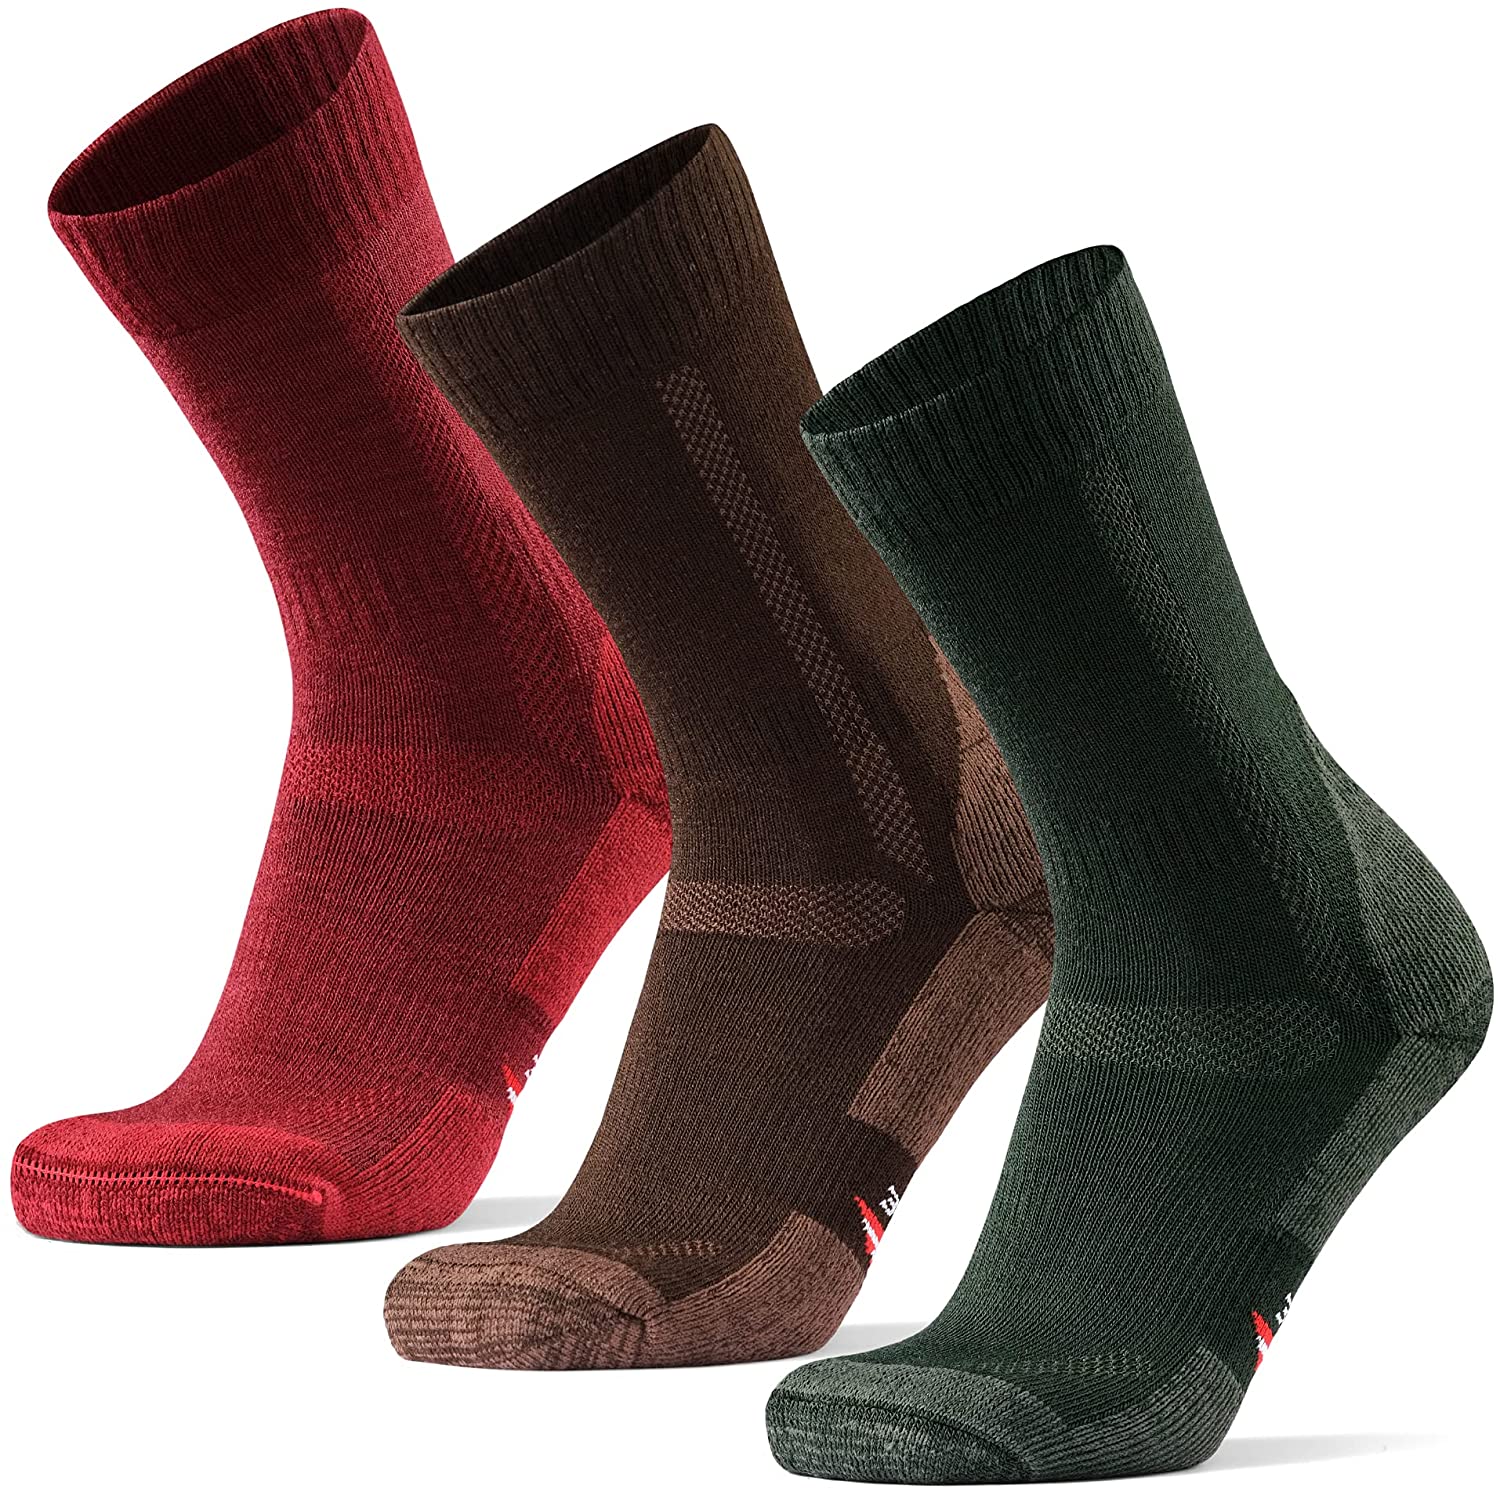 DANISH ENDURANCE Merino Wool Hiking Socks